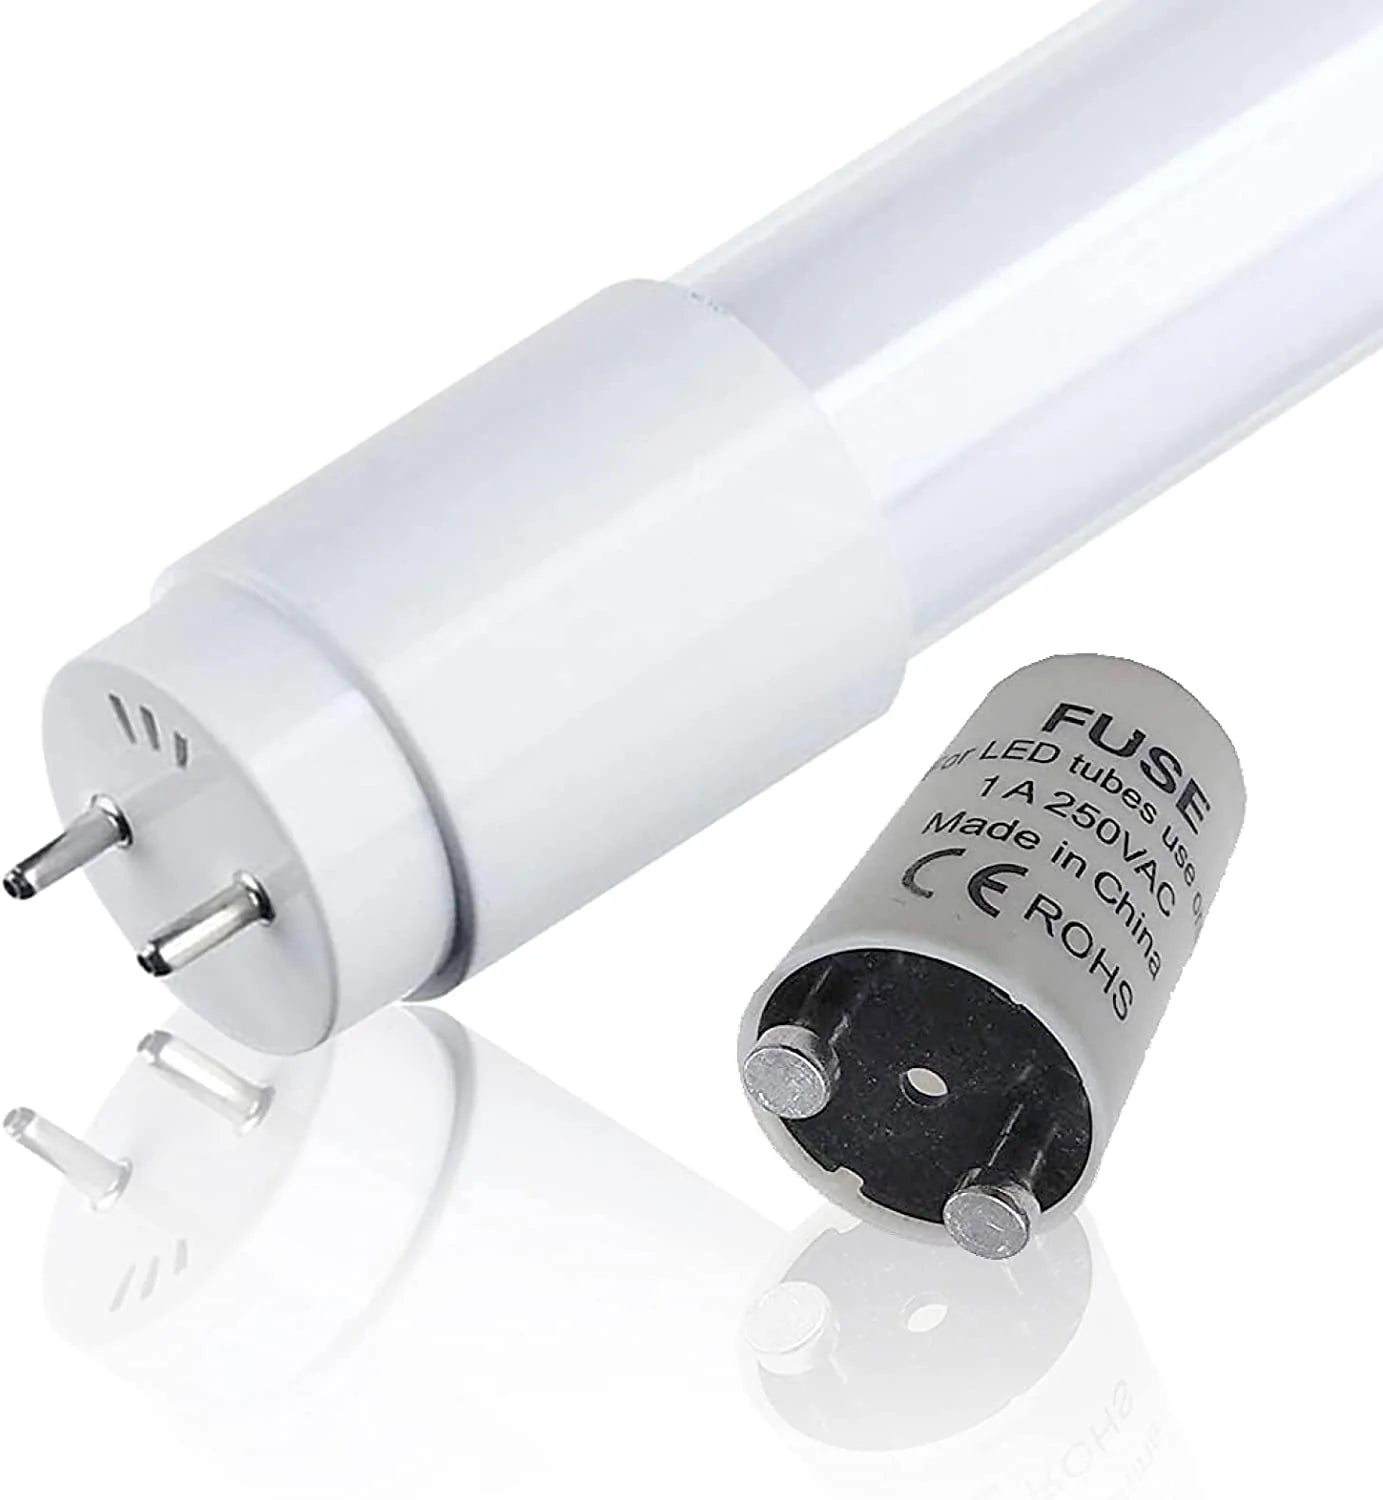 Pack de 10 tubes LED T8 1m20 20W - Couleur blanc froid ou neutre au choix (120cm) Fonatech